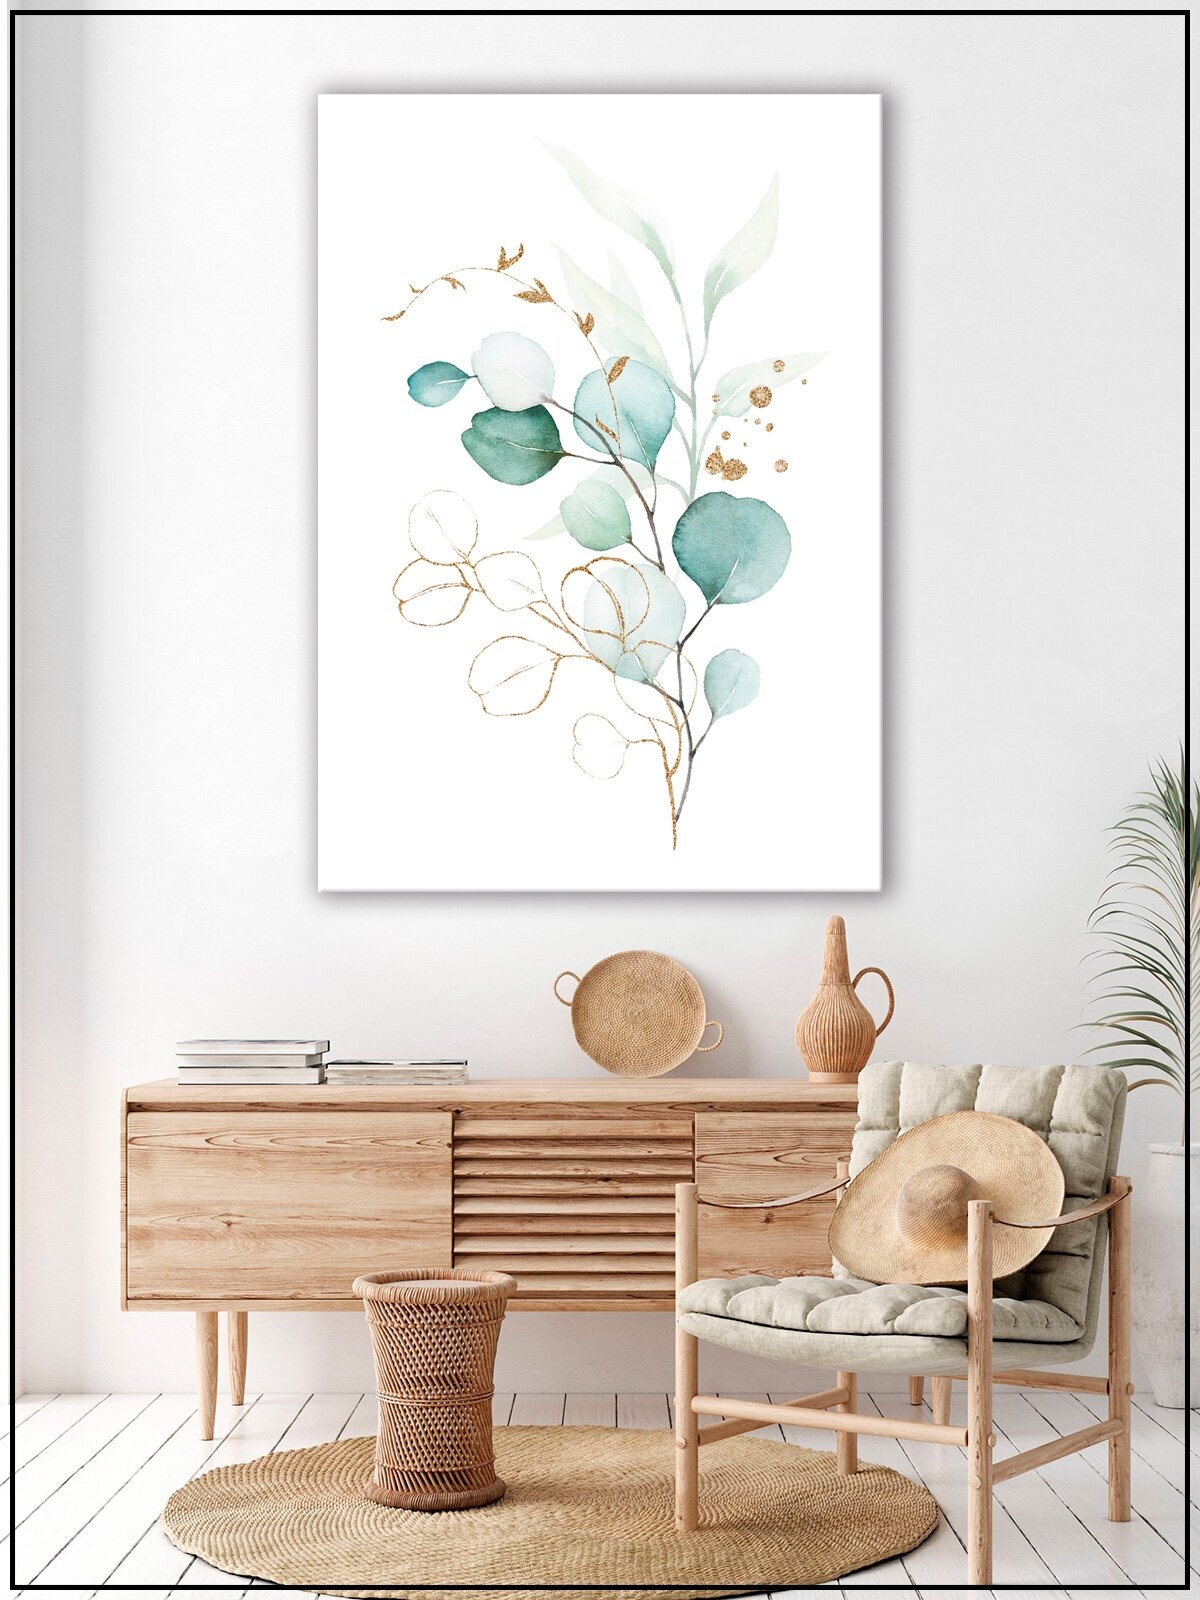 Картина для интерьера на натуральном хлопковом холсте "Акварельные цветочные ветви", 55*77см, холст на подрамнике, картина в подарок